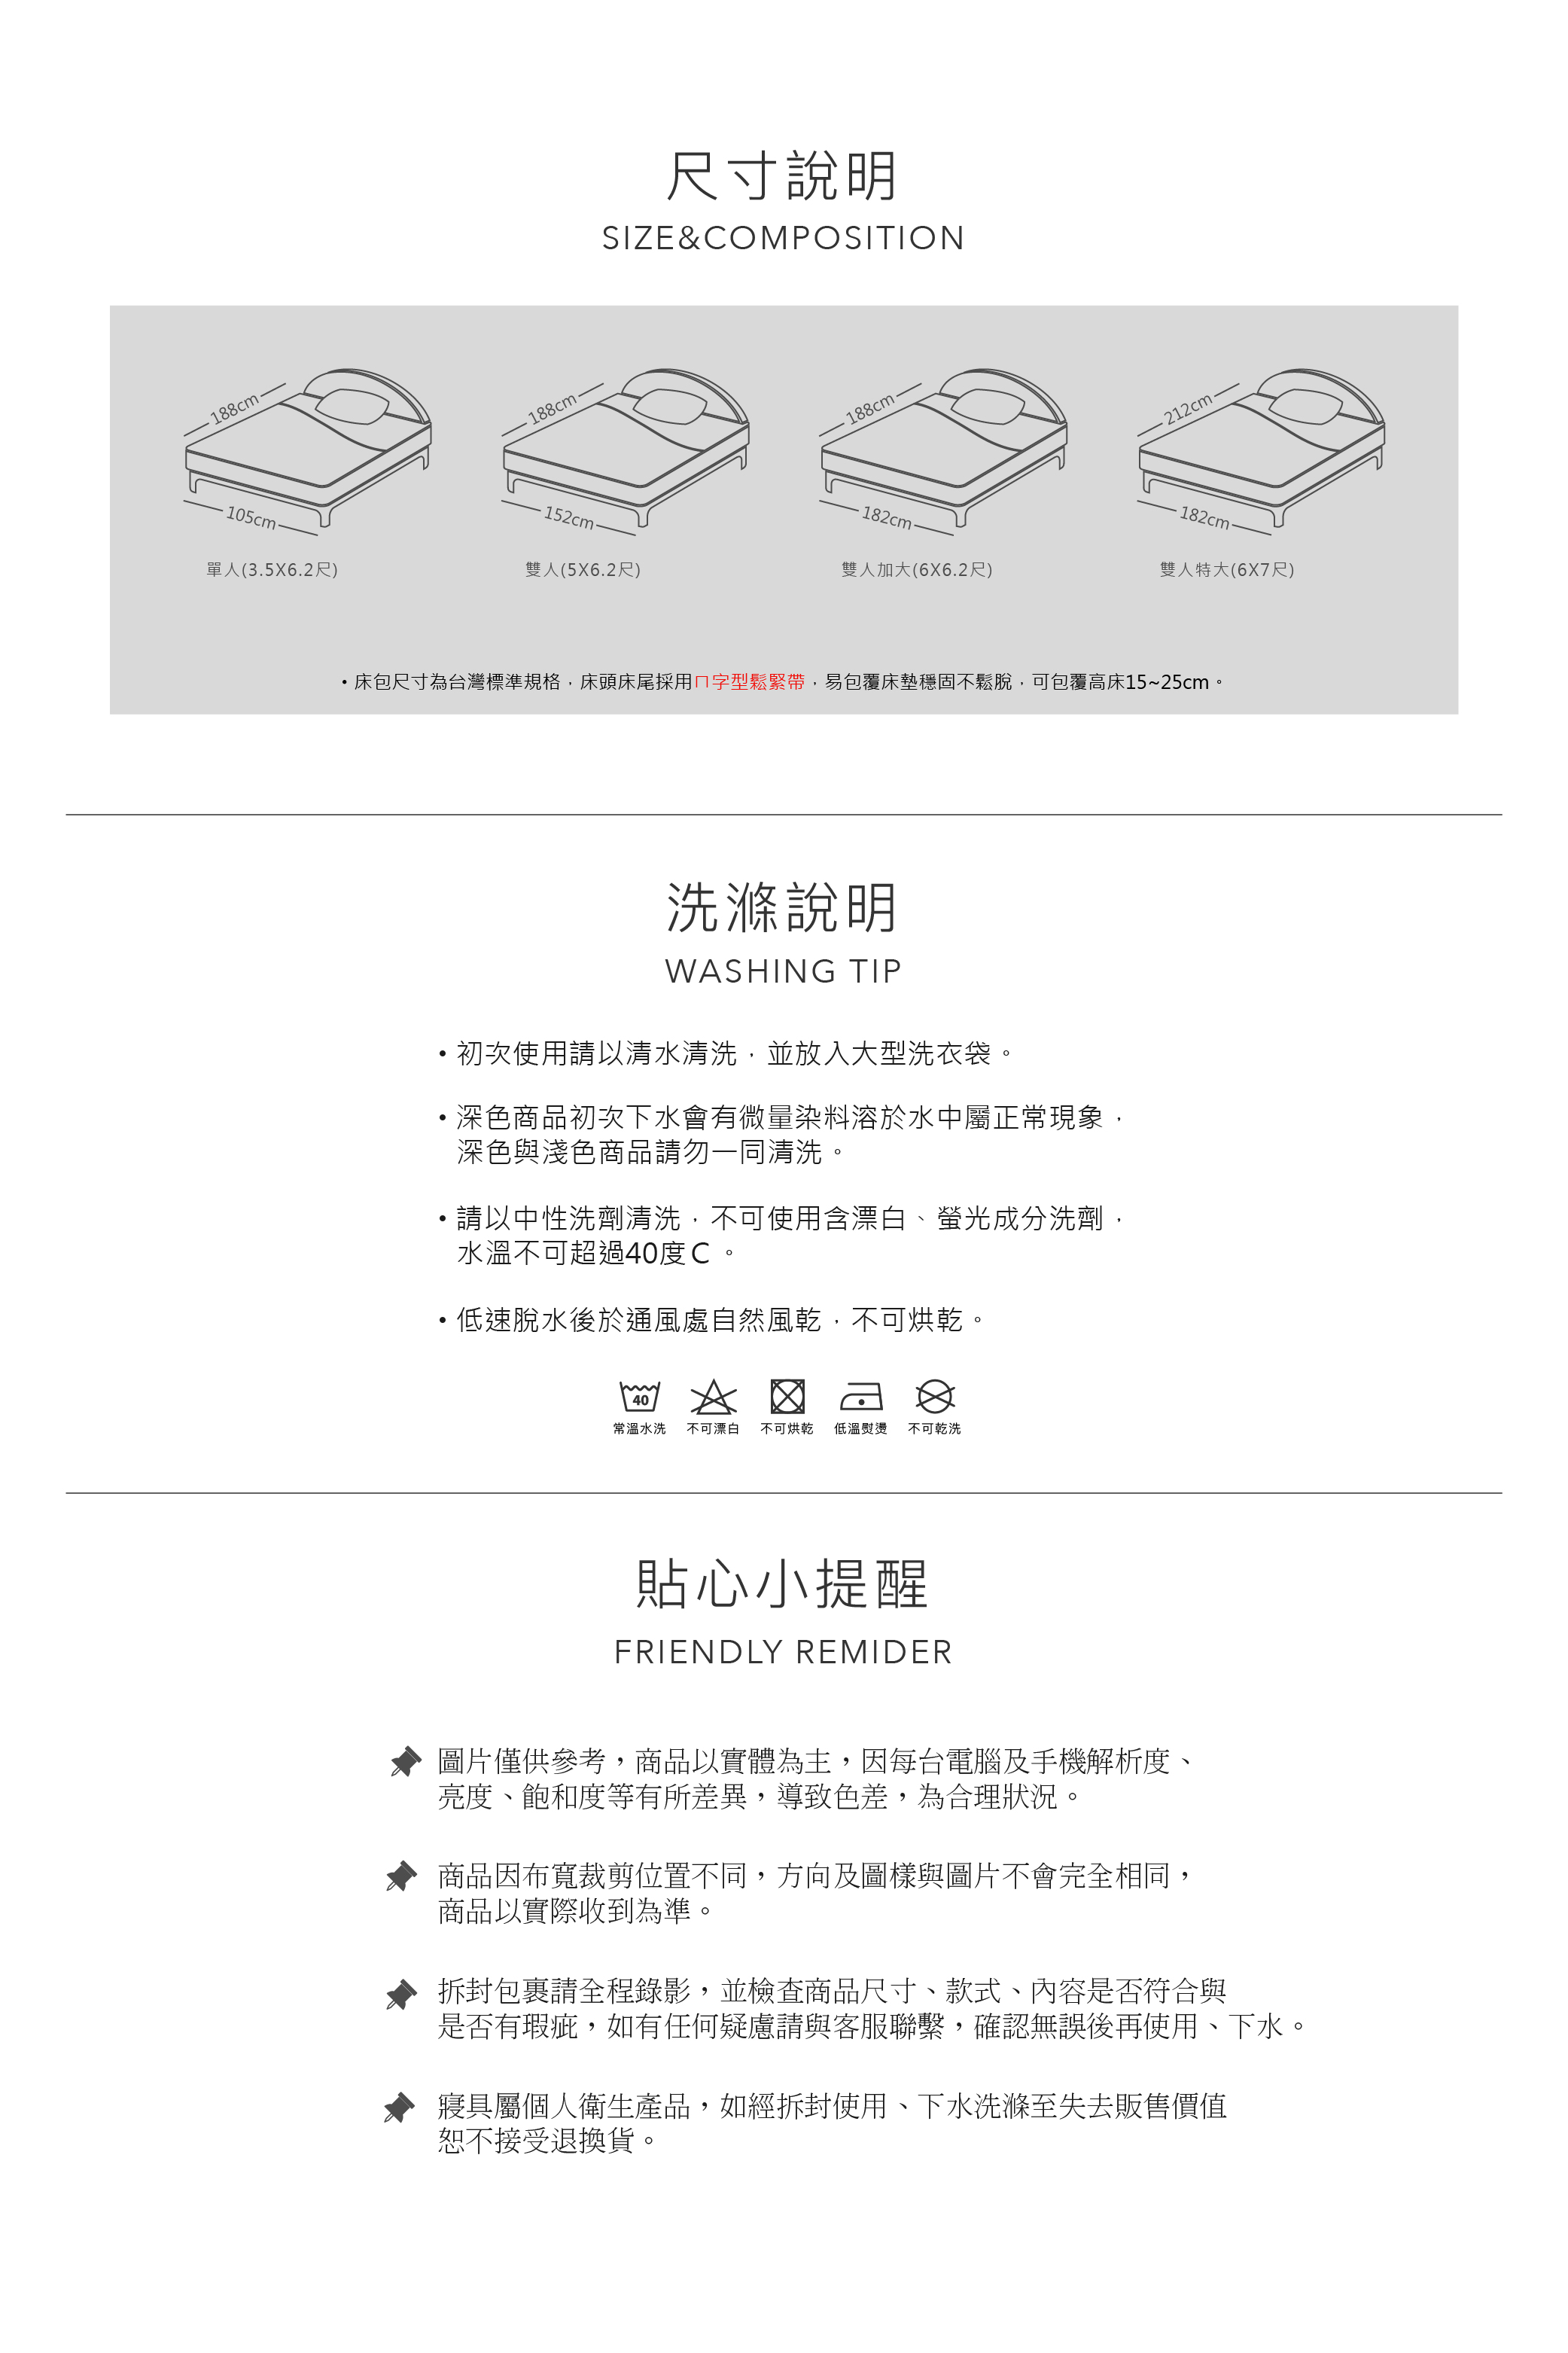  台灣製 3M防水保潔墊 單人保潔墊/雙人保潔墊/加大保潔墊/特大保潔墊